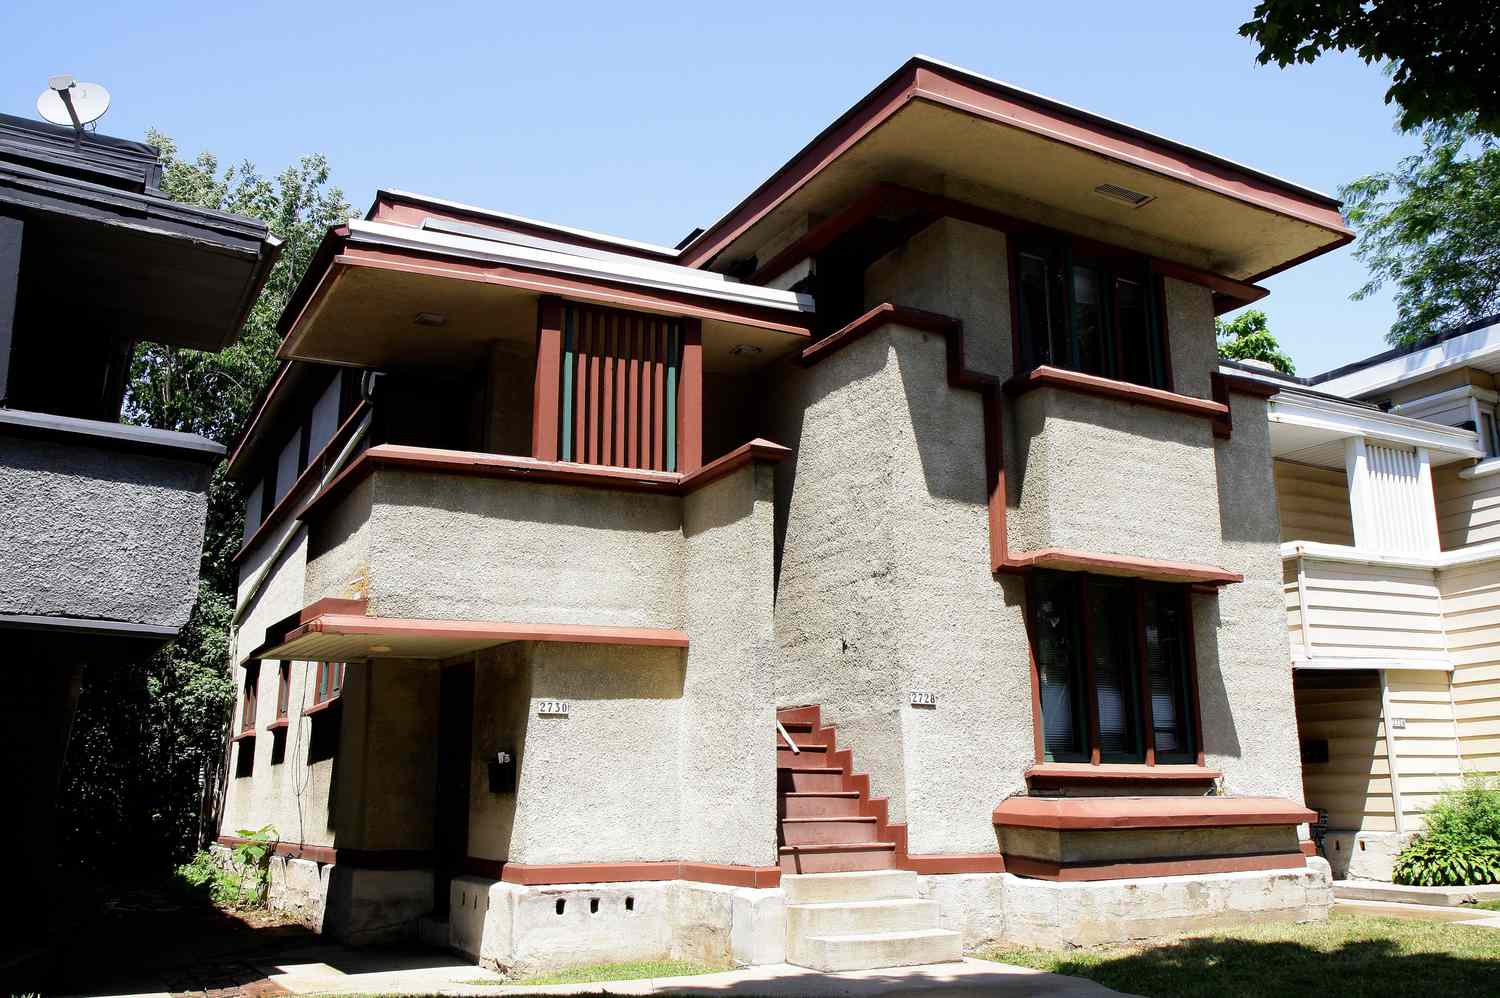 Apartamento duplex projetado por Frank Lloyd Wright, uma casa americana construída pelo sistema em Milwaukee, Wisconsin